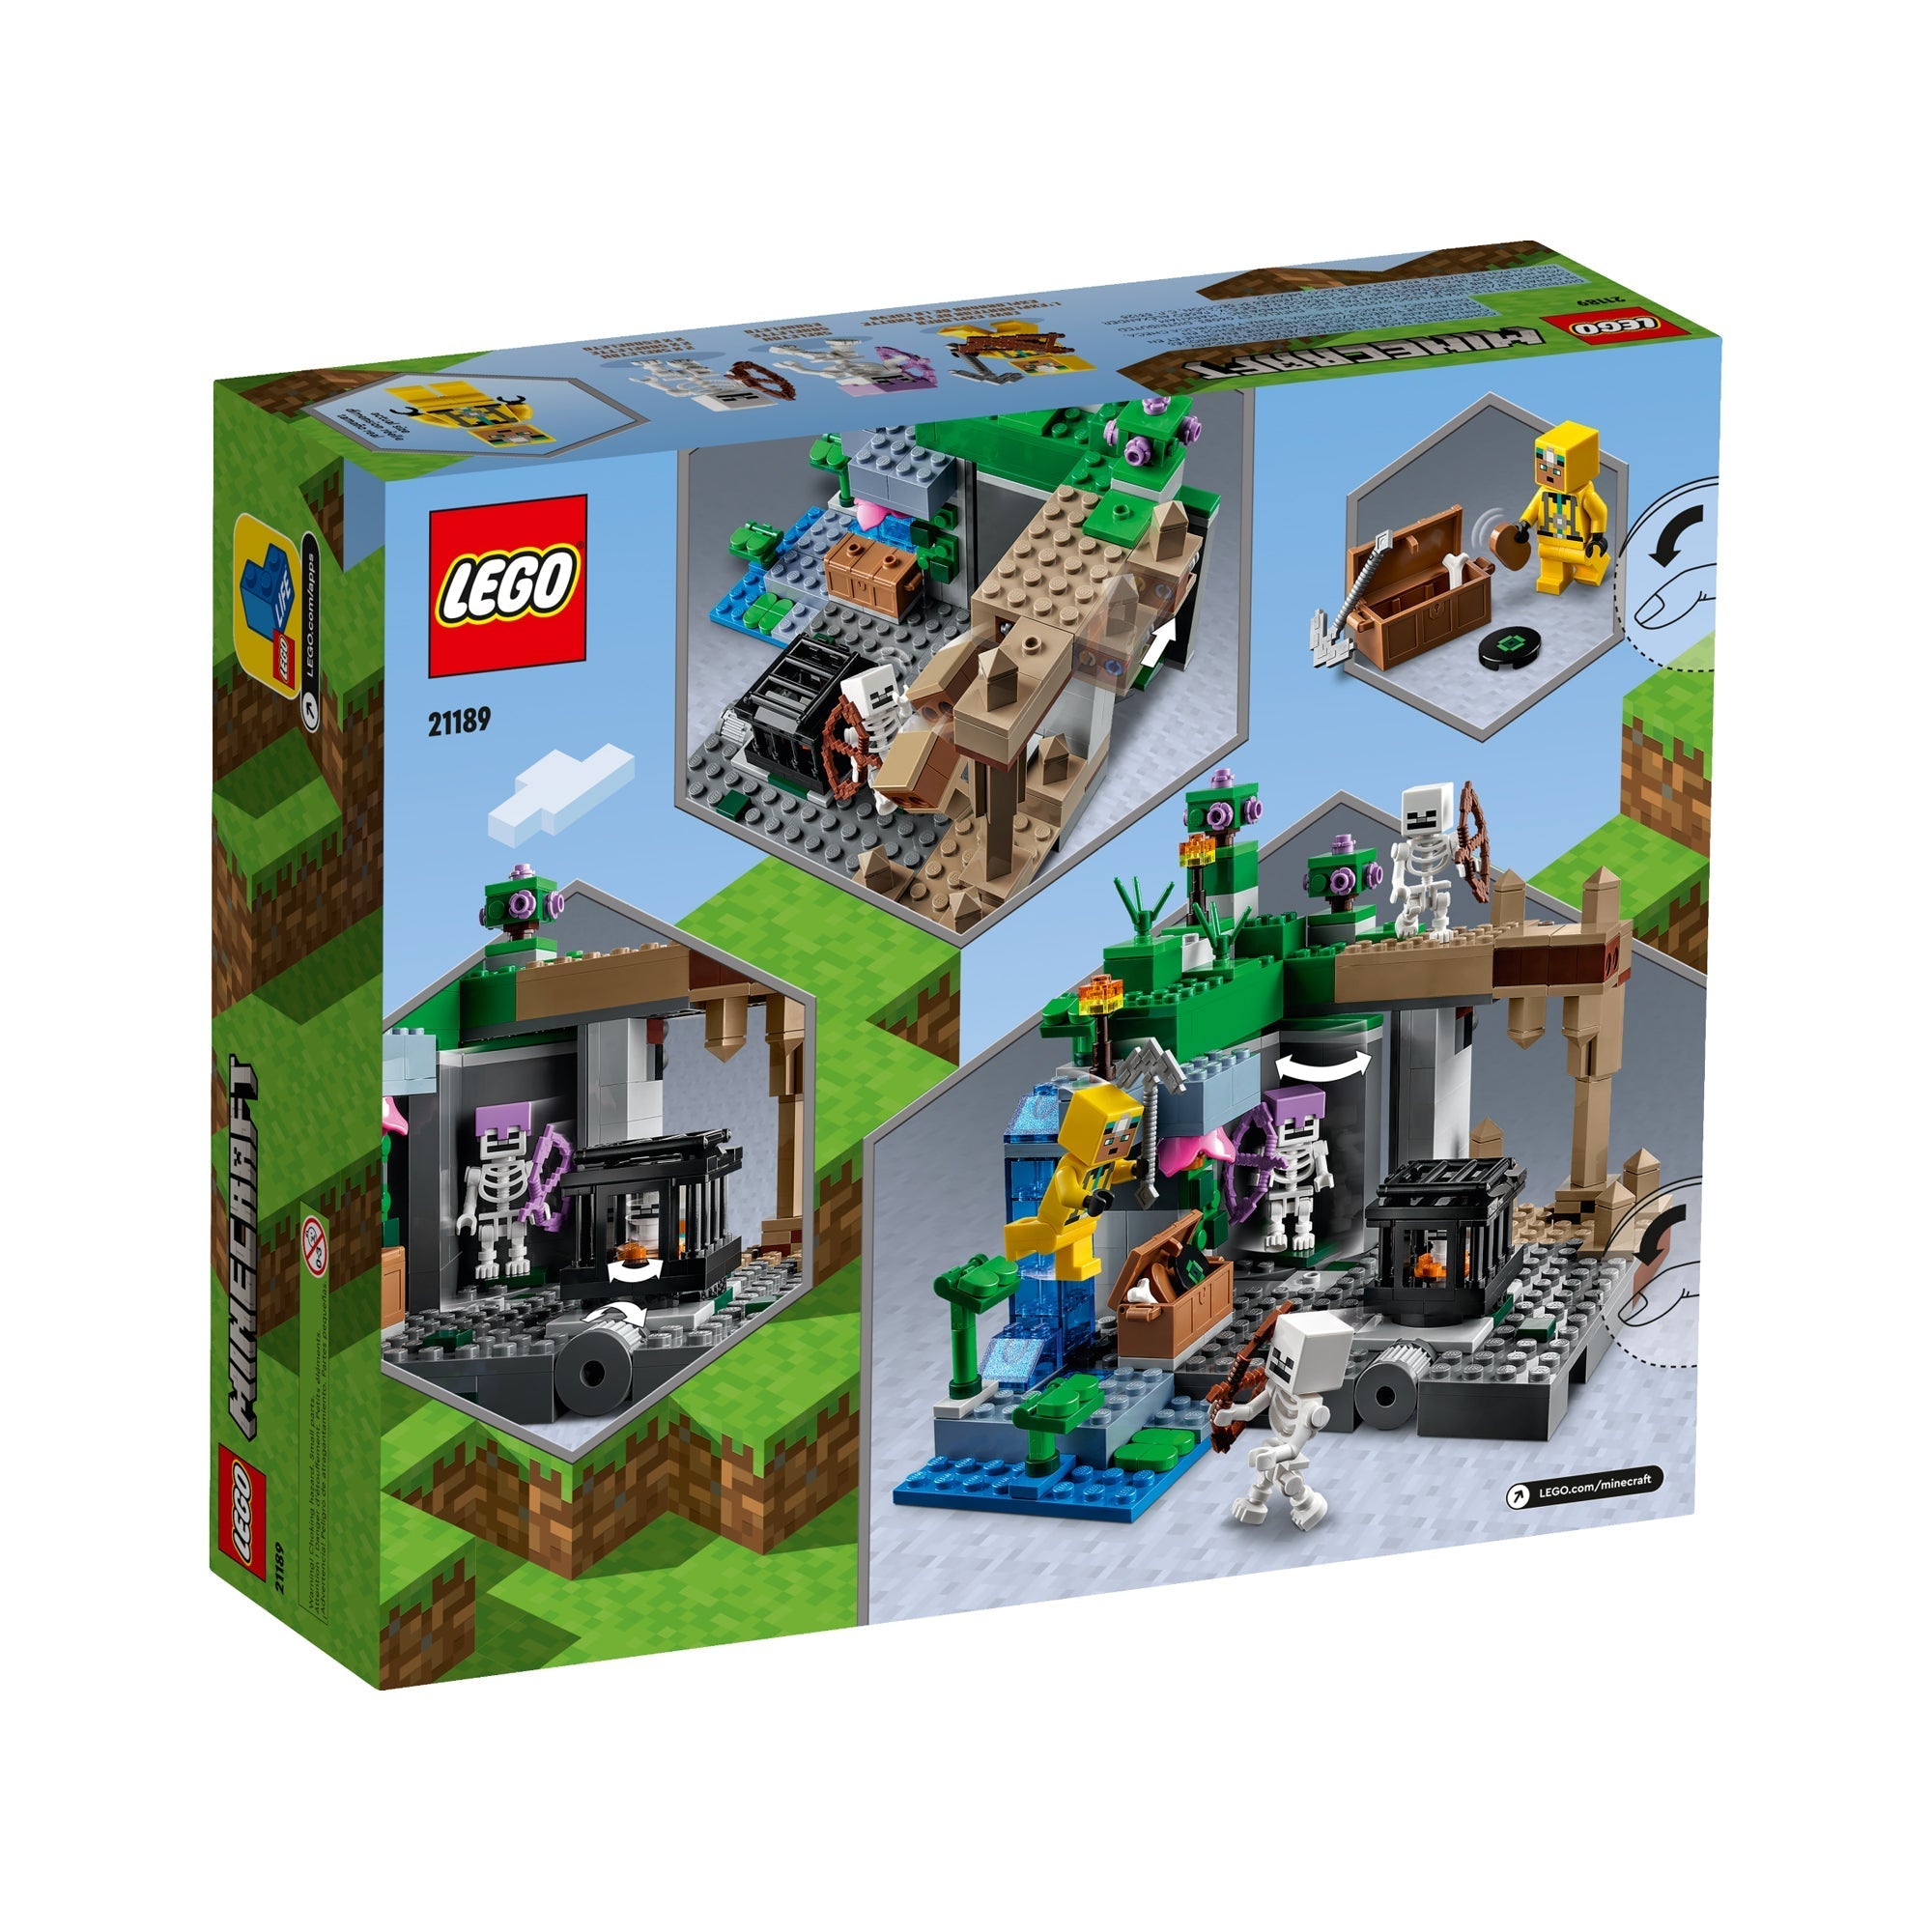 LEGO Minecraft 21184 La Boulangerie, Jouet pour Enfants 8 Ans et